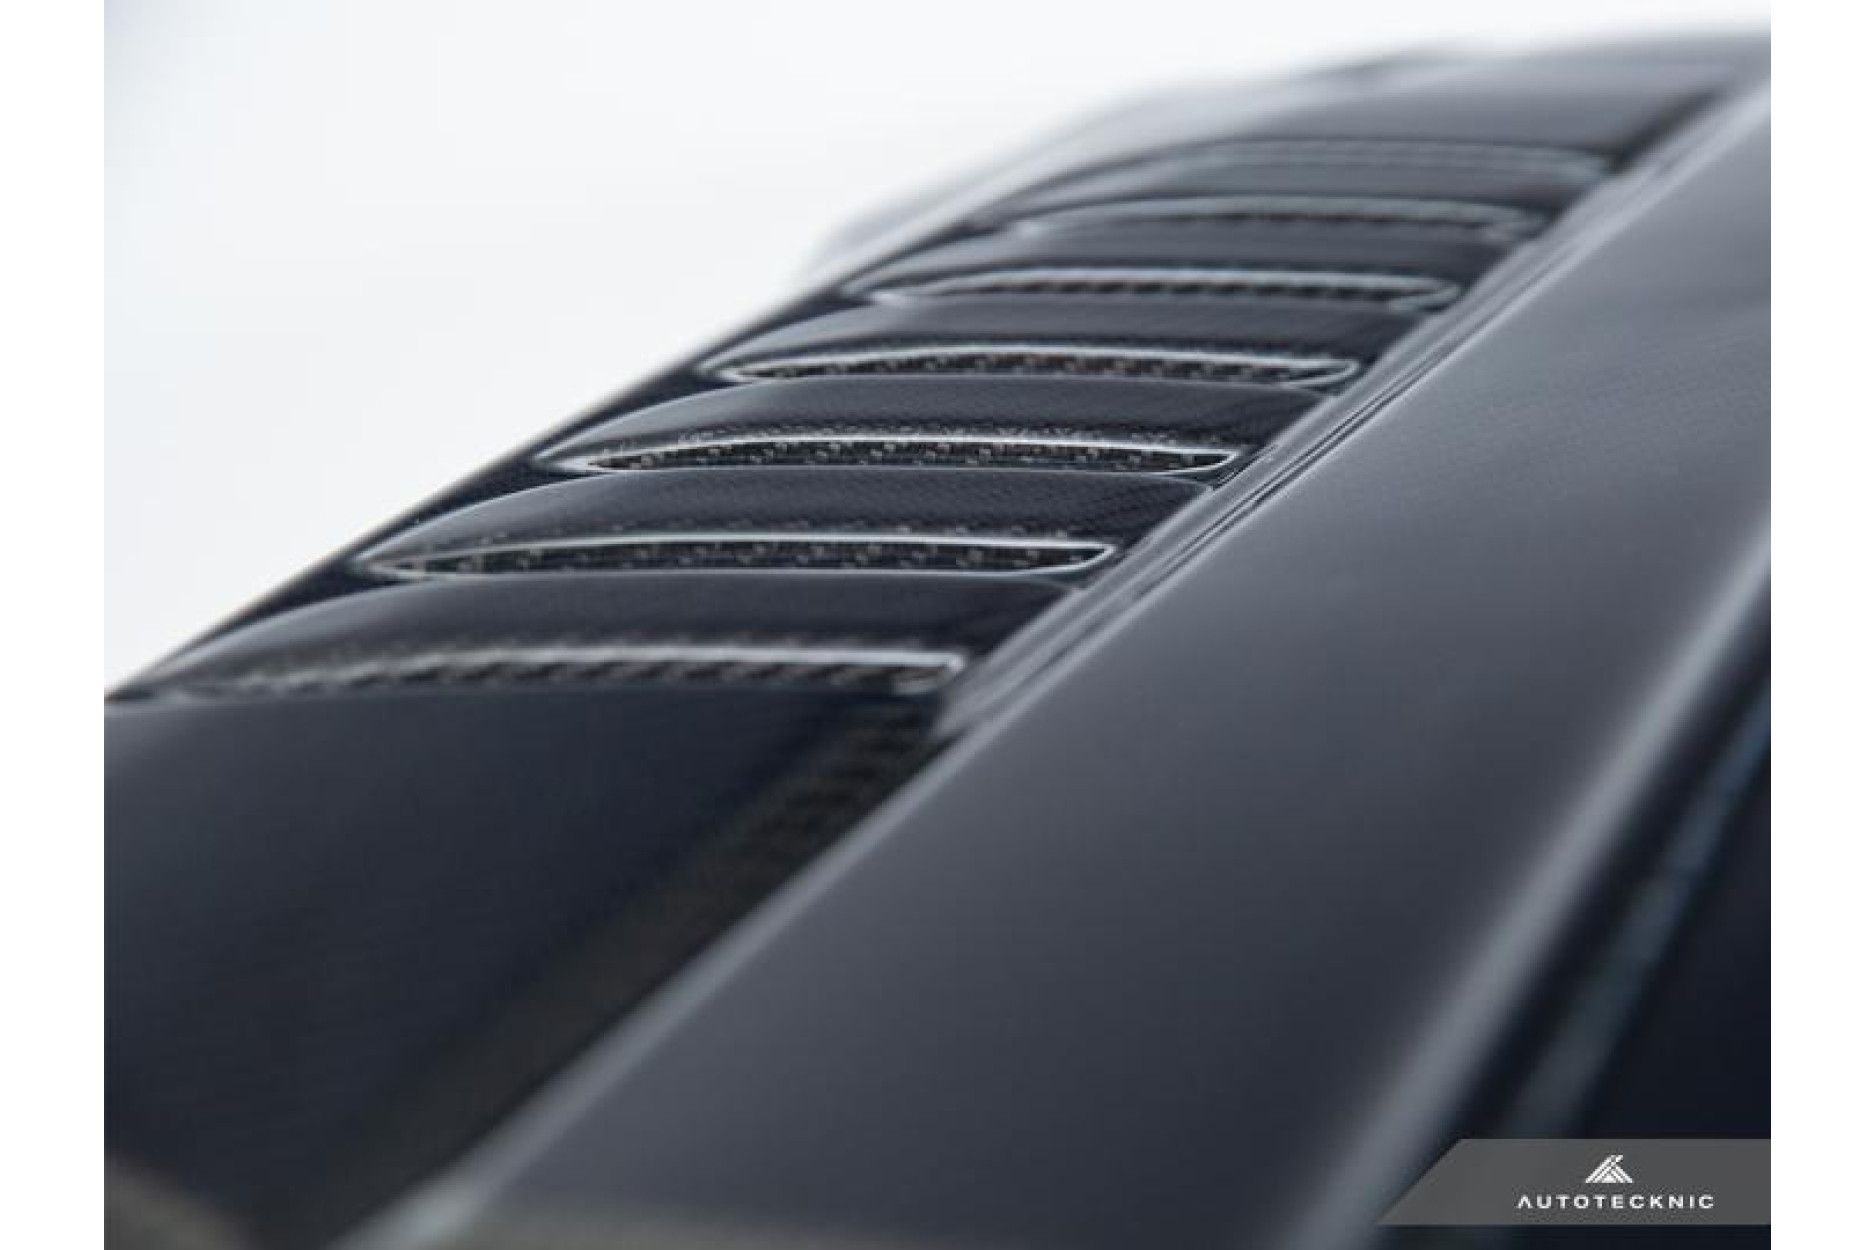 Autotecknic Carbon Motorabdeckung für Toyota Supra A90 2020-up - online  kaufen bei CFD